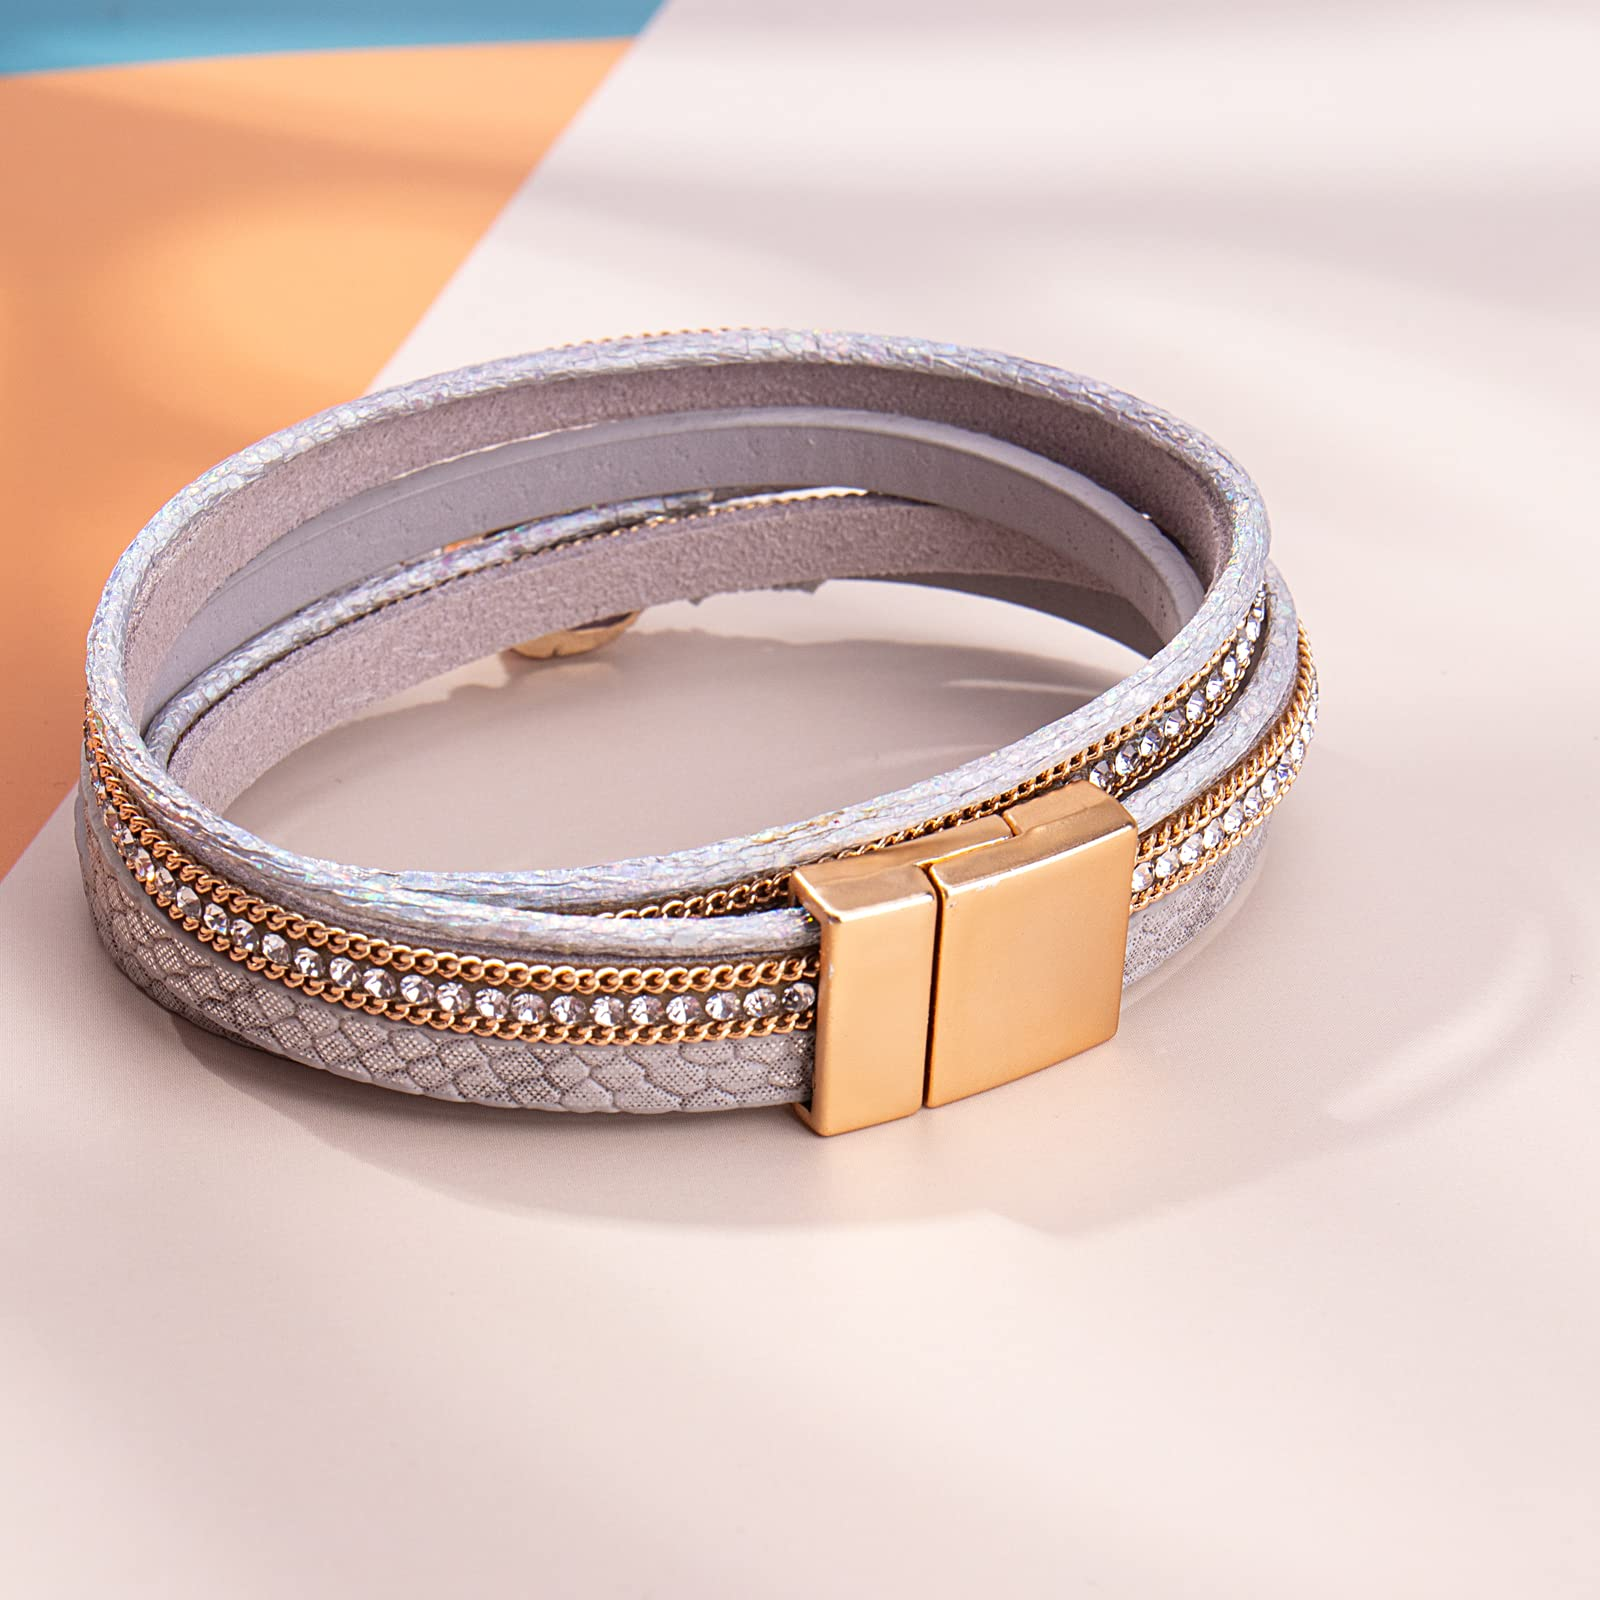 Leather Wrap Bracelets with Gemstones - YouTube